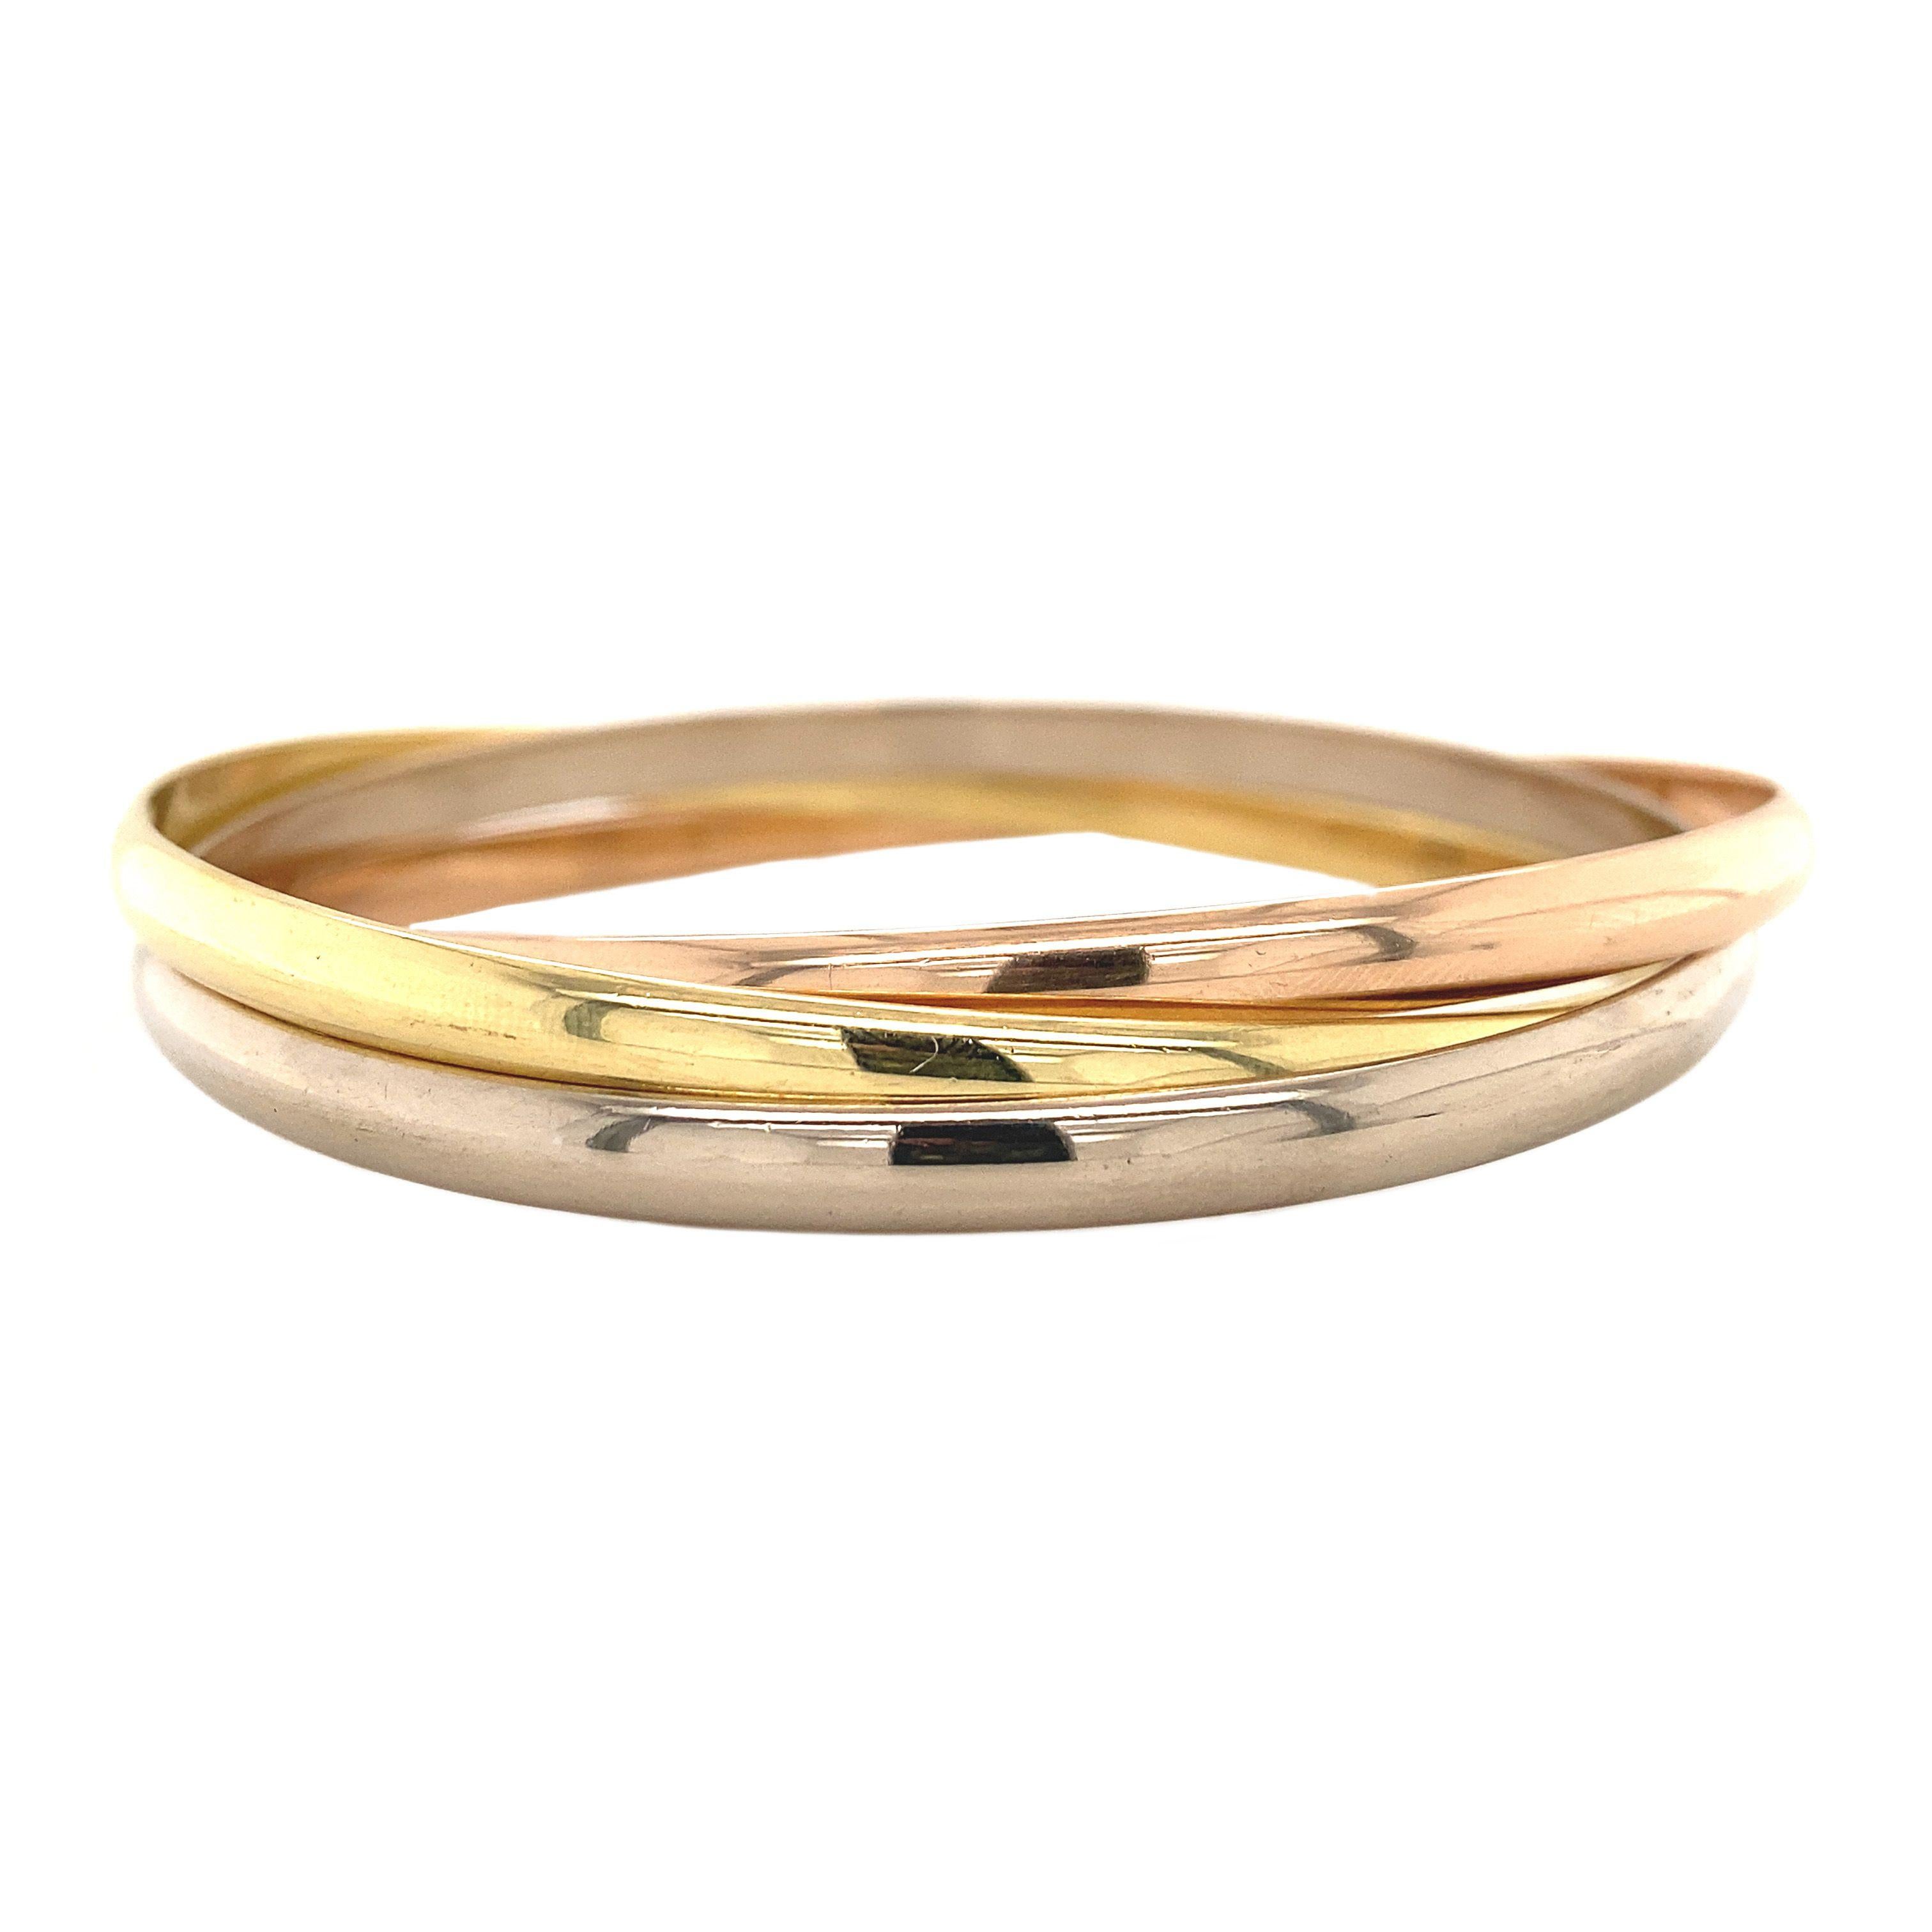 Ce bracelet trinitaire en or tricolore est de la marque Cartier de l'année 1997. Le bracelet se compose d'une bande en or blanc, en or jaune et en or rose 18 carats. Le bracelet est livré avec sa boîte d'origine. 

Marque : Cartier
MATERIAL : Or